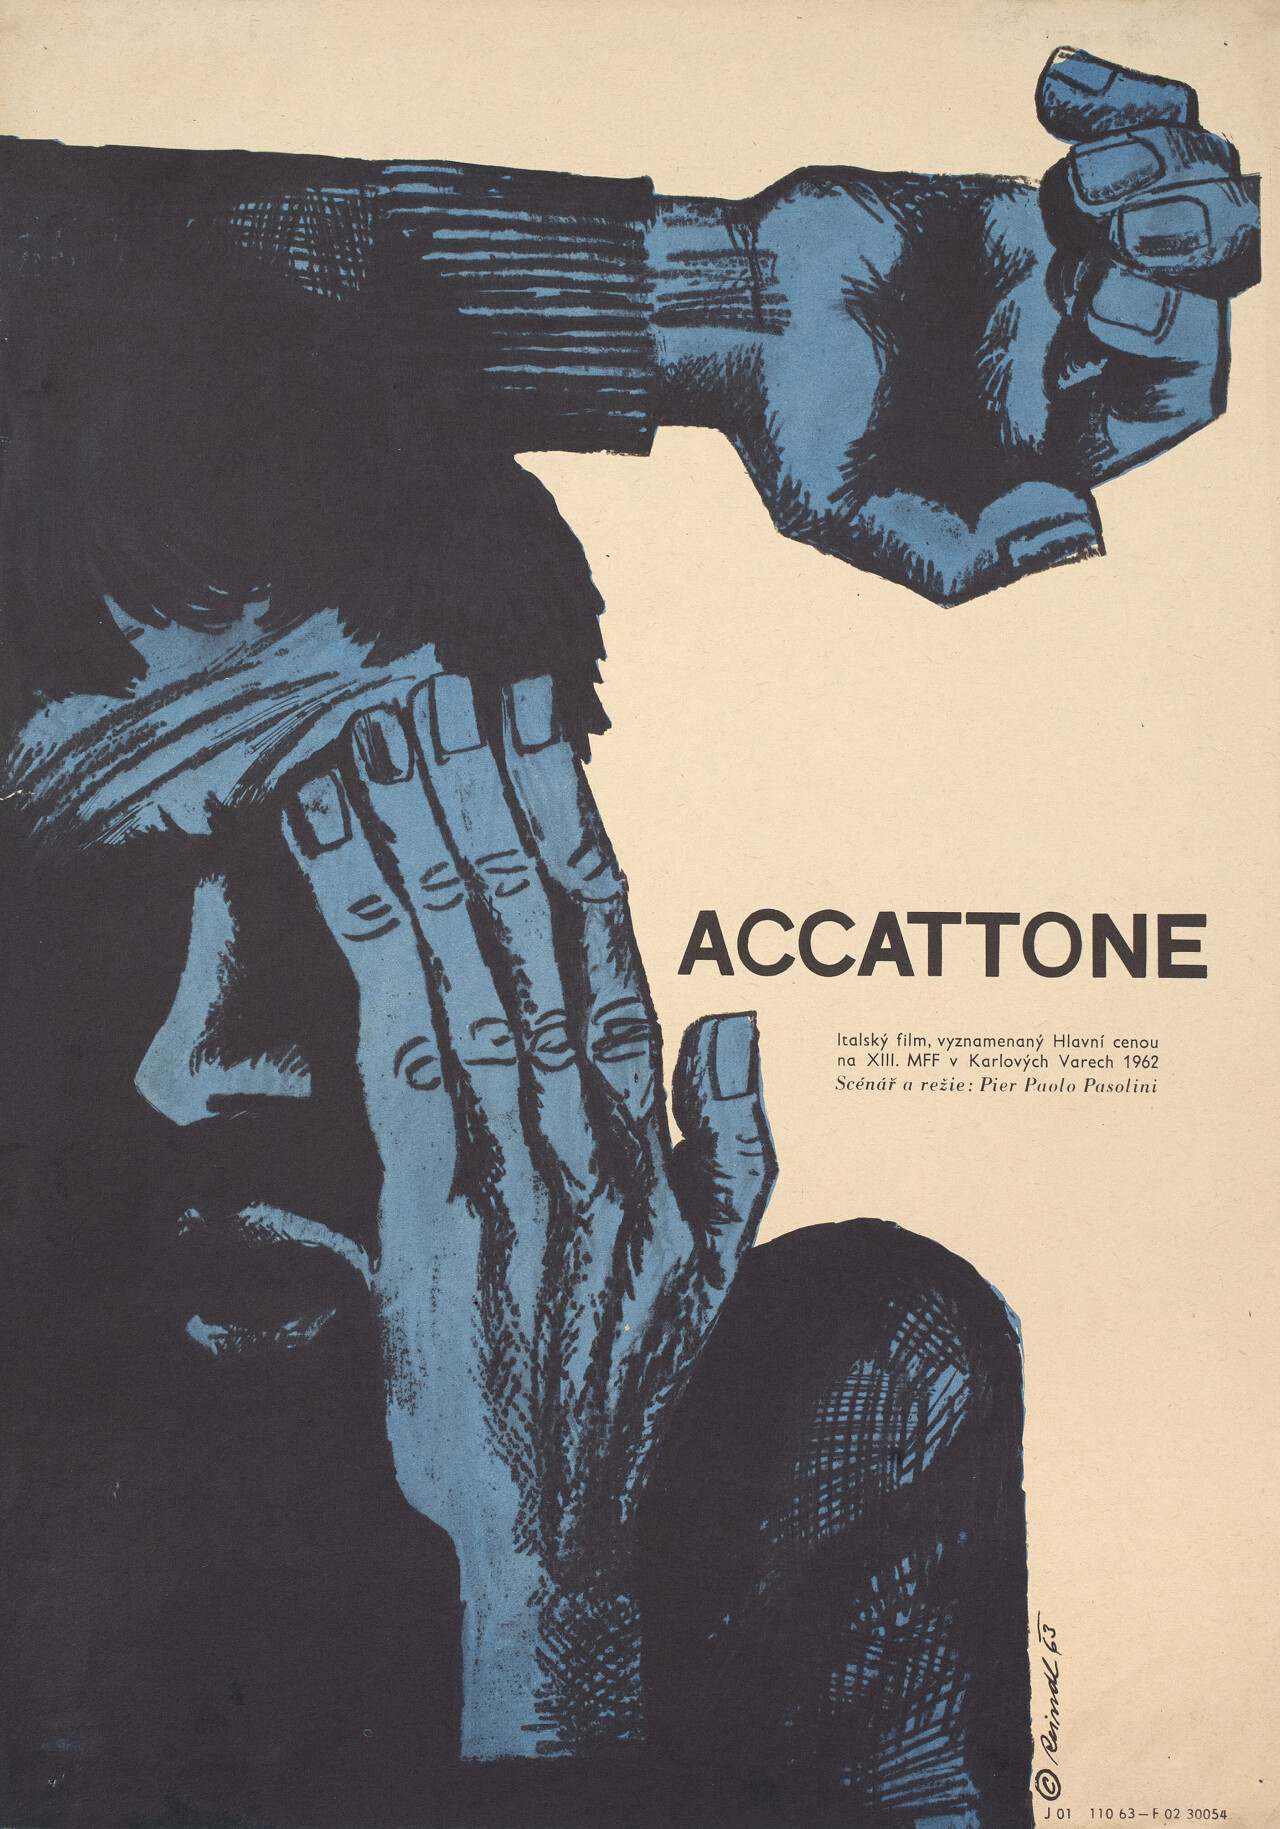 Аккатоне, (Accattone 1961), режиссёр Пьер Паоло Пазолини, чехословацкий постер к фильму, автор Милош Рейндл (графический дизайн, 1963 год)